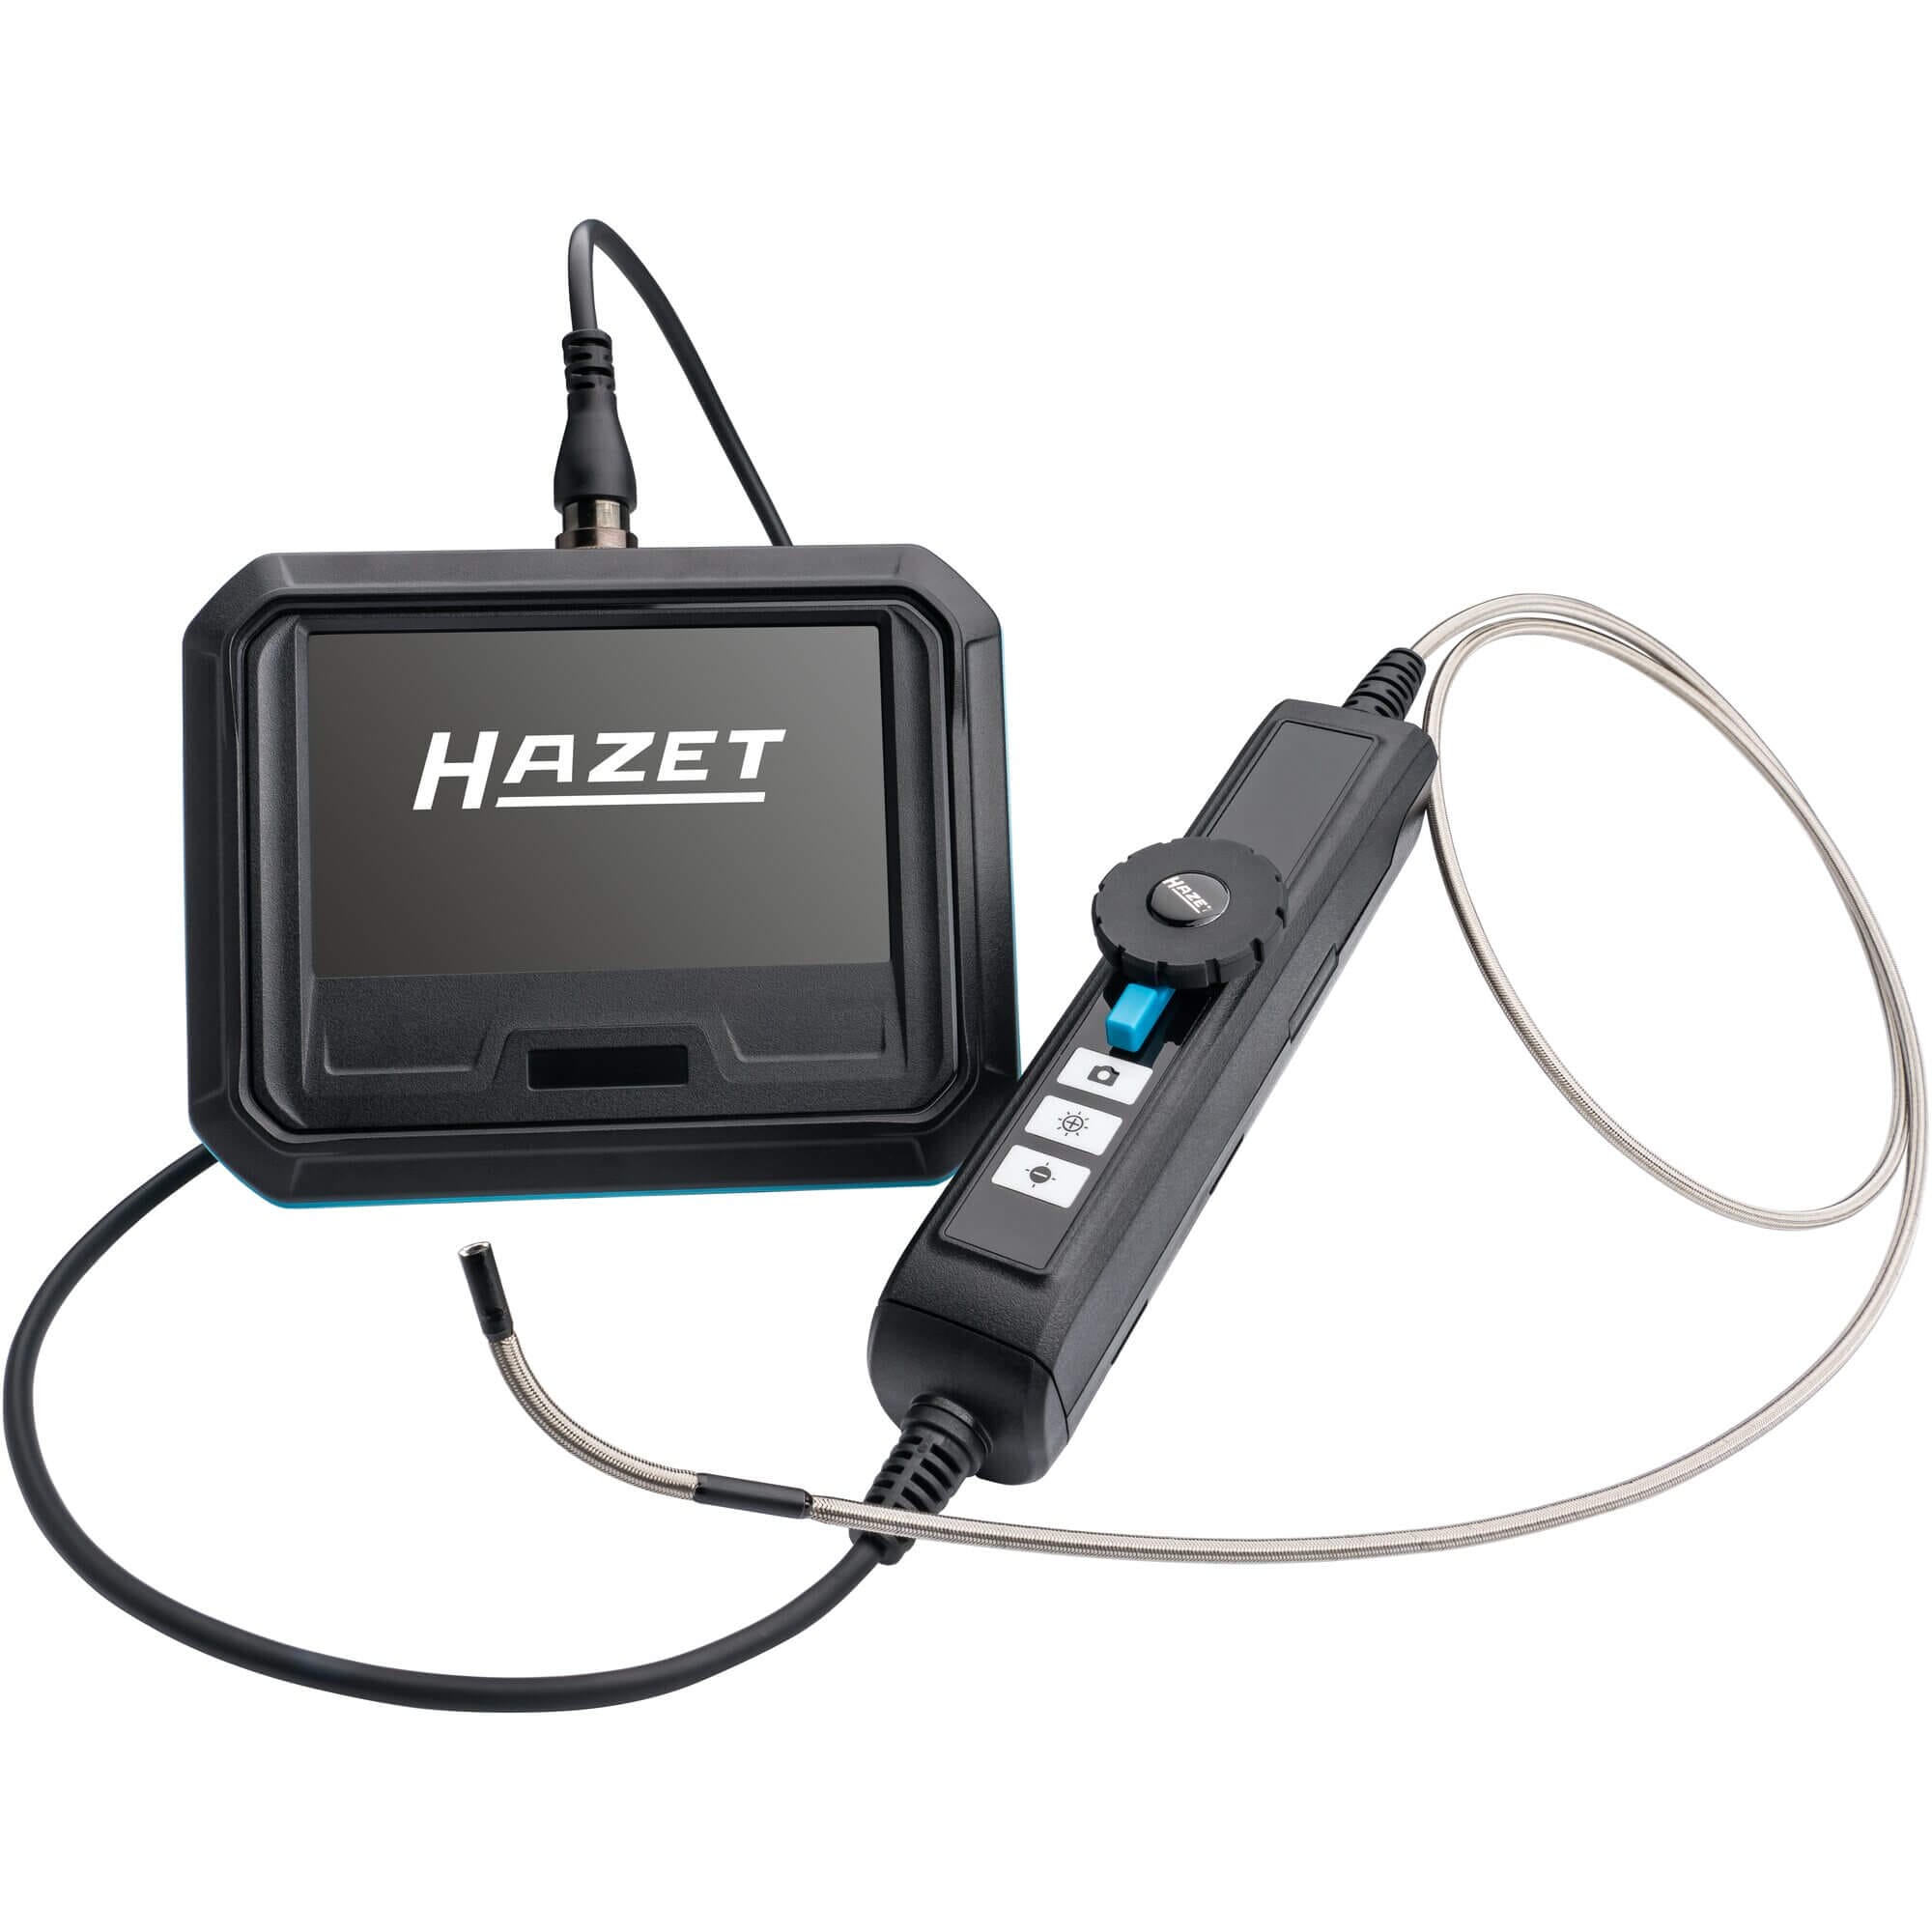 HAZET Video-Endoskop 4812-10/4S ∙ Anzahl Werkzeuge: 4